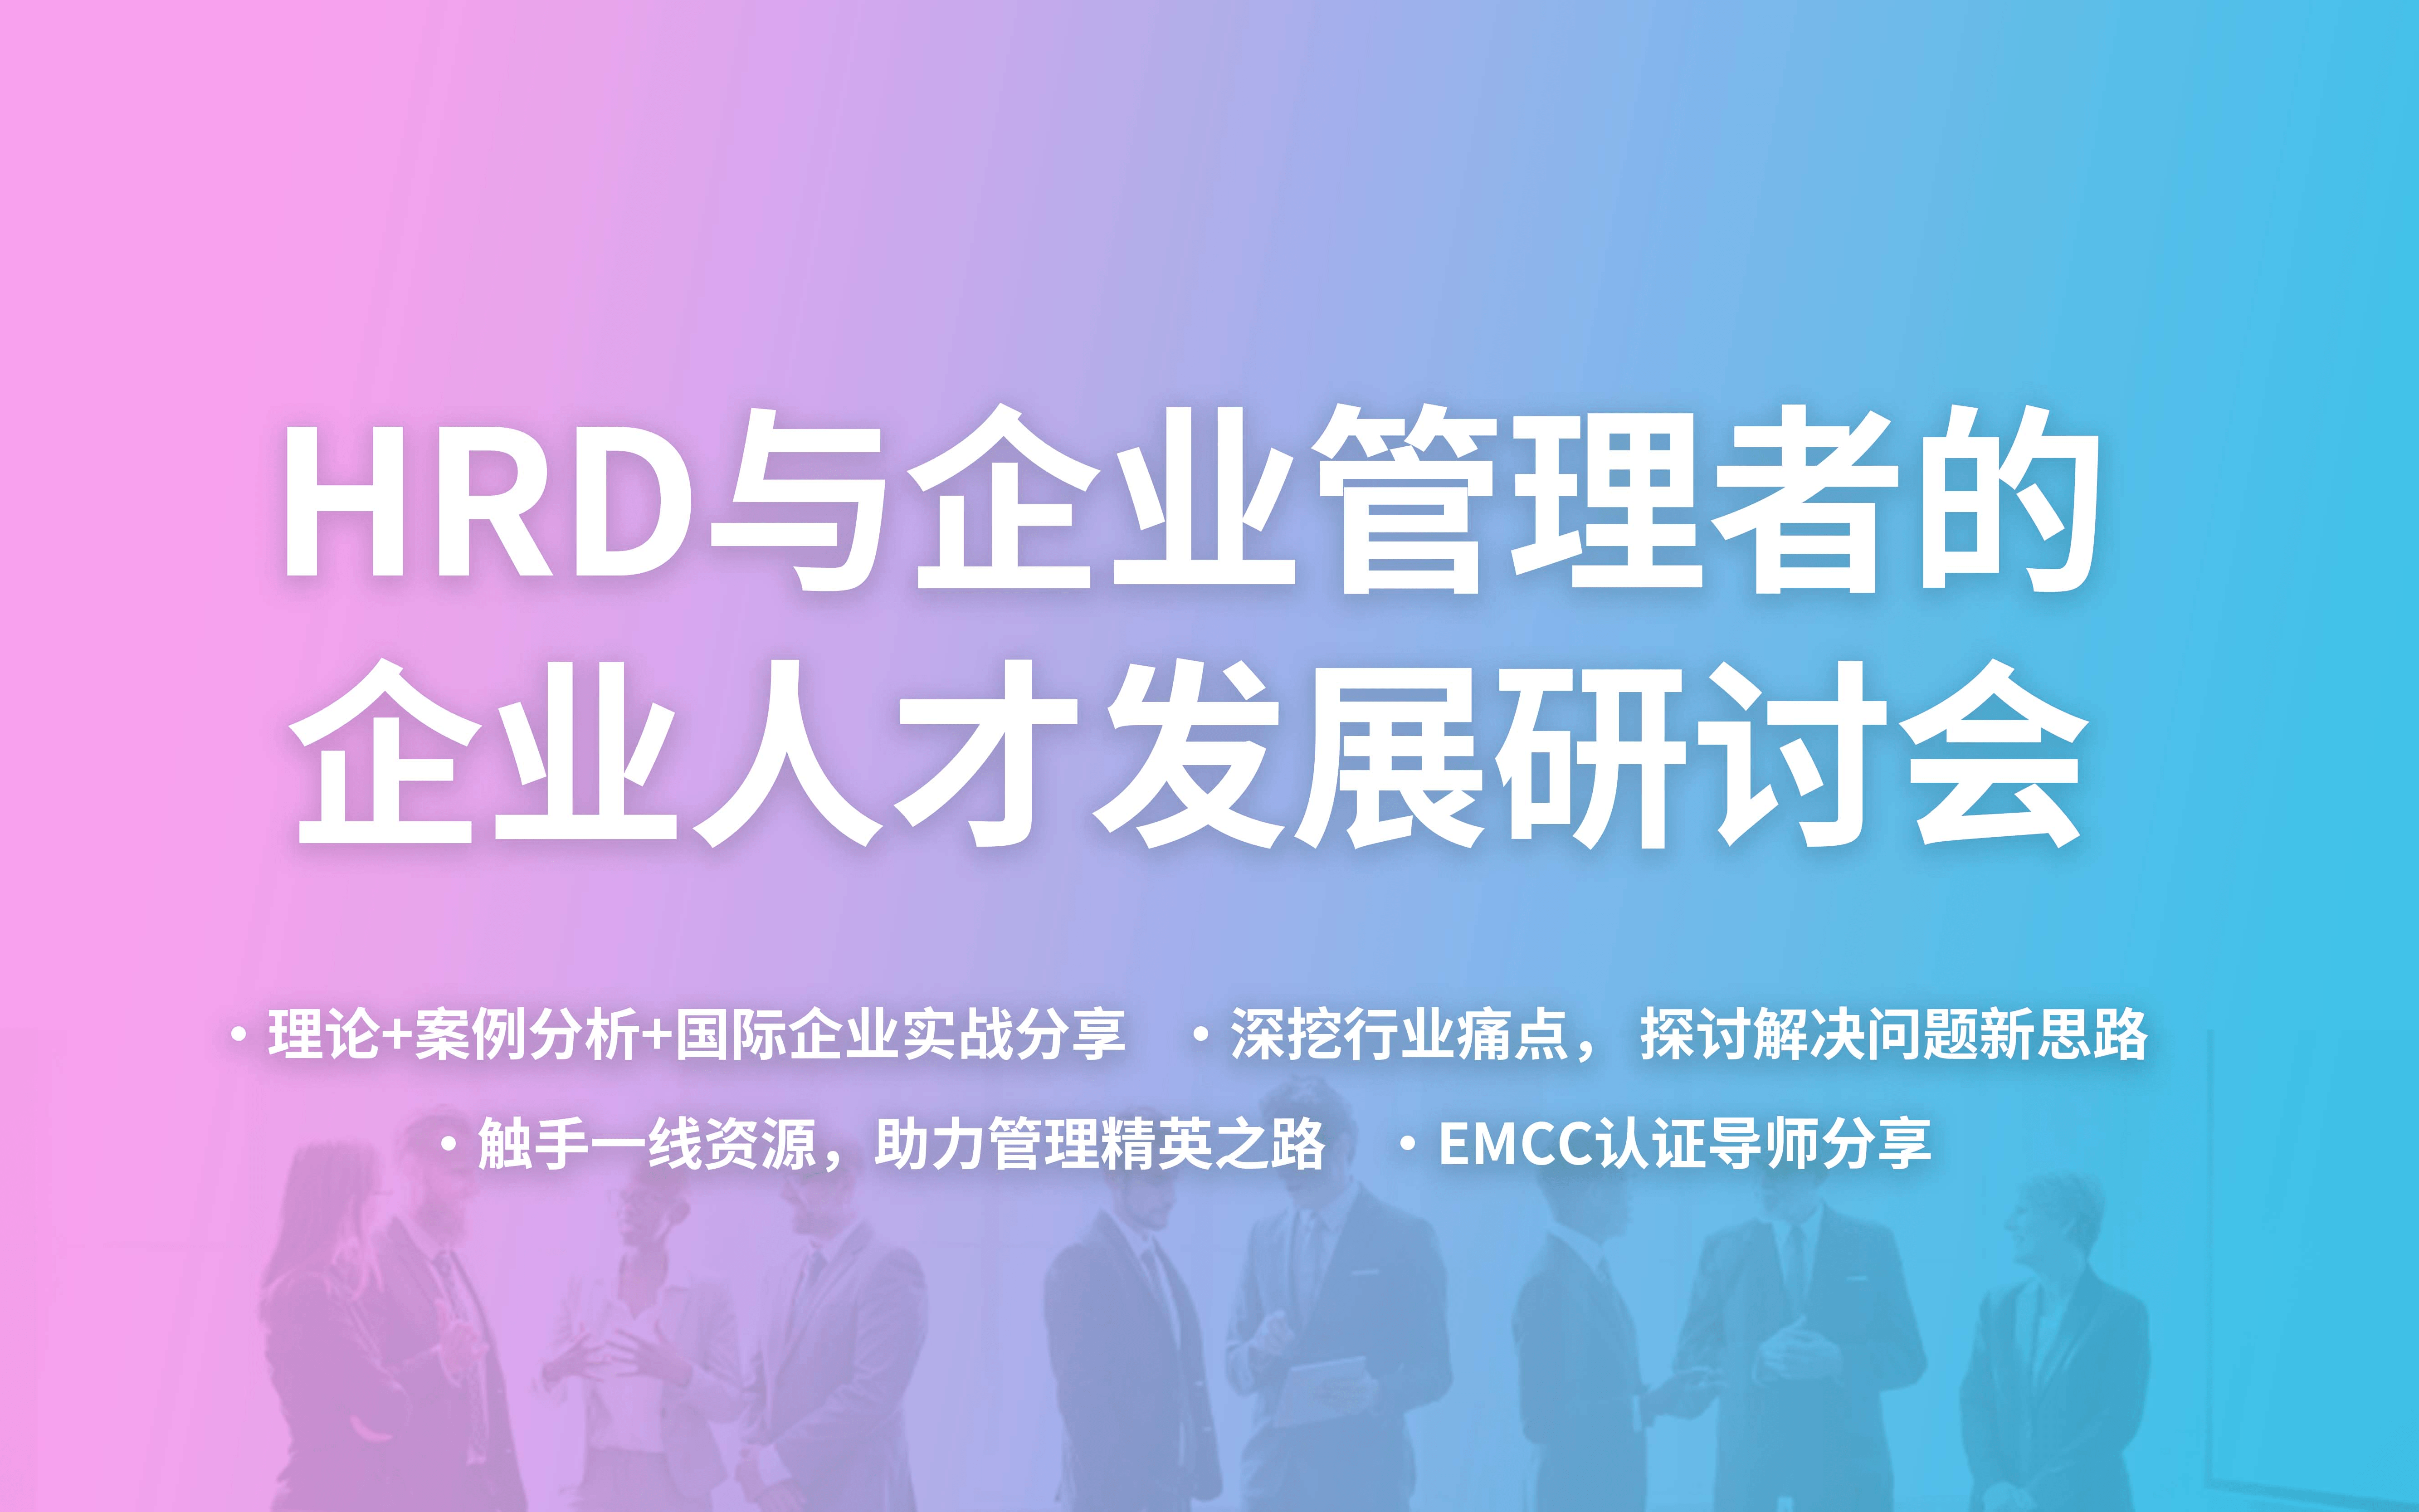 HRD与企业管理者的企业人才发展研讨会(限时免费)